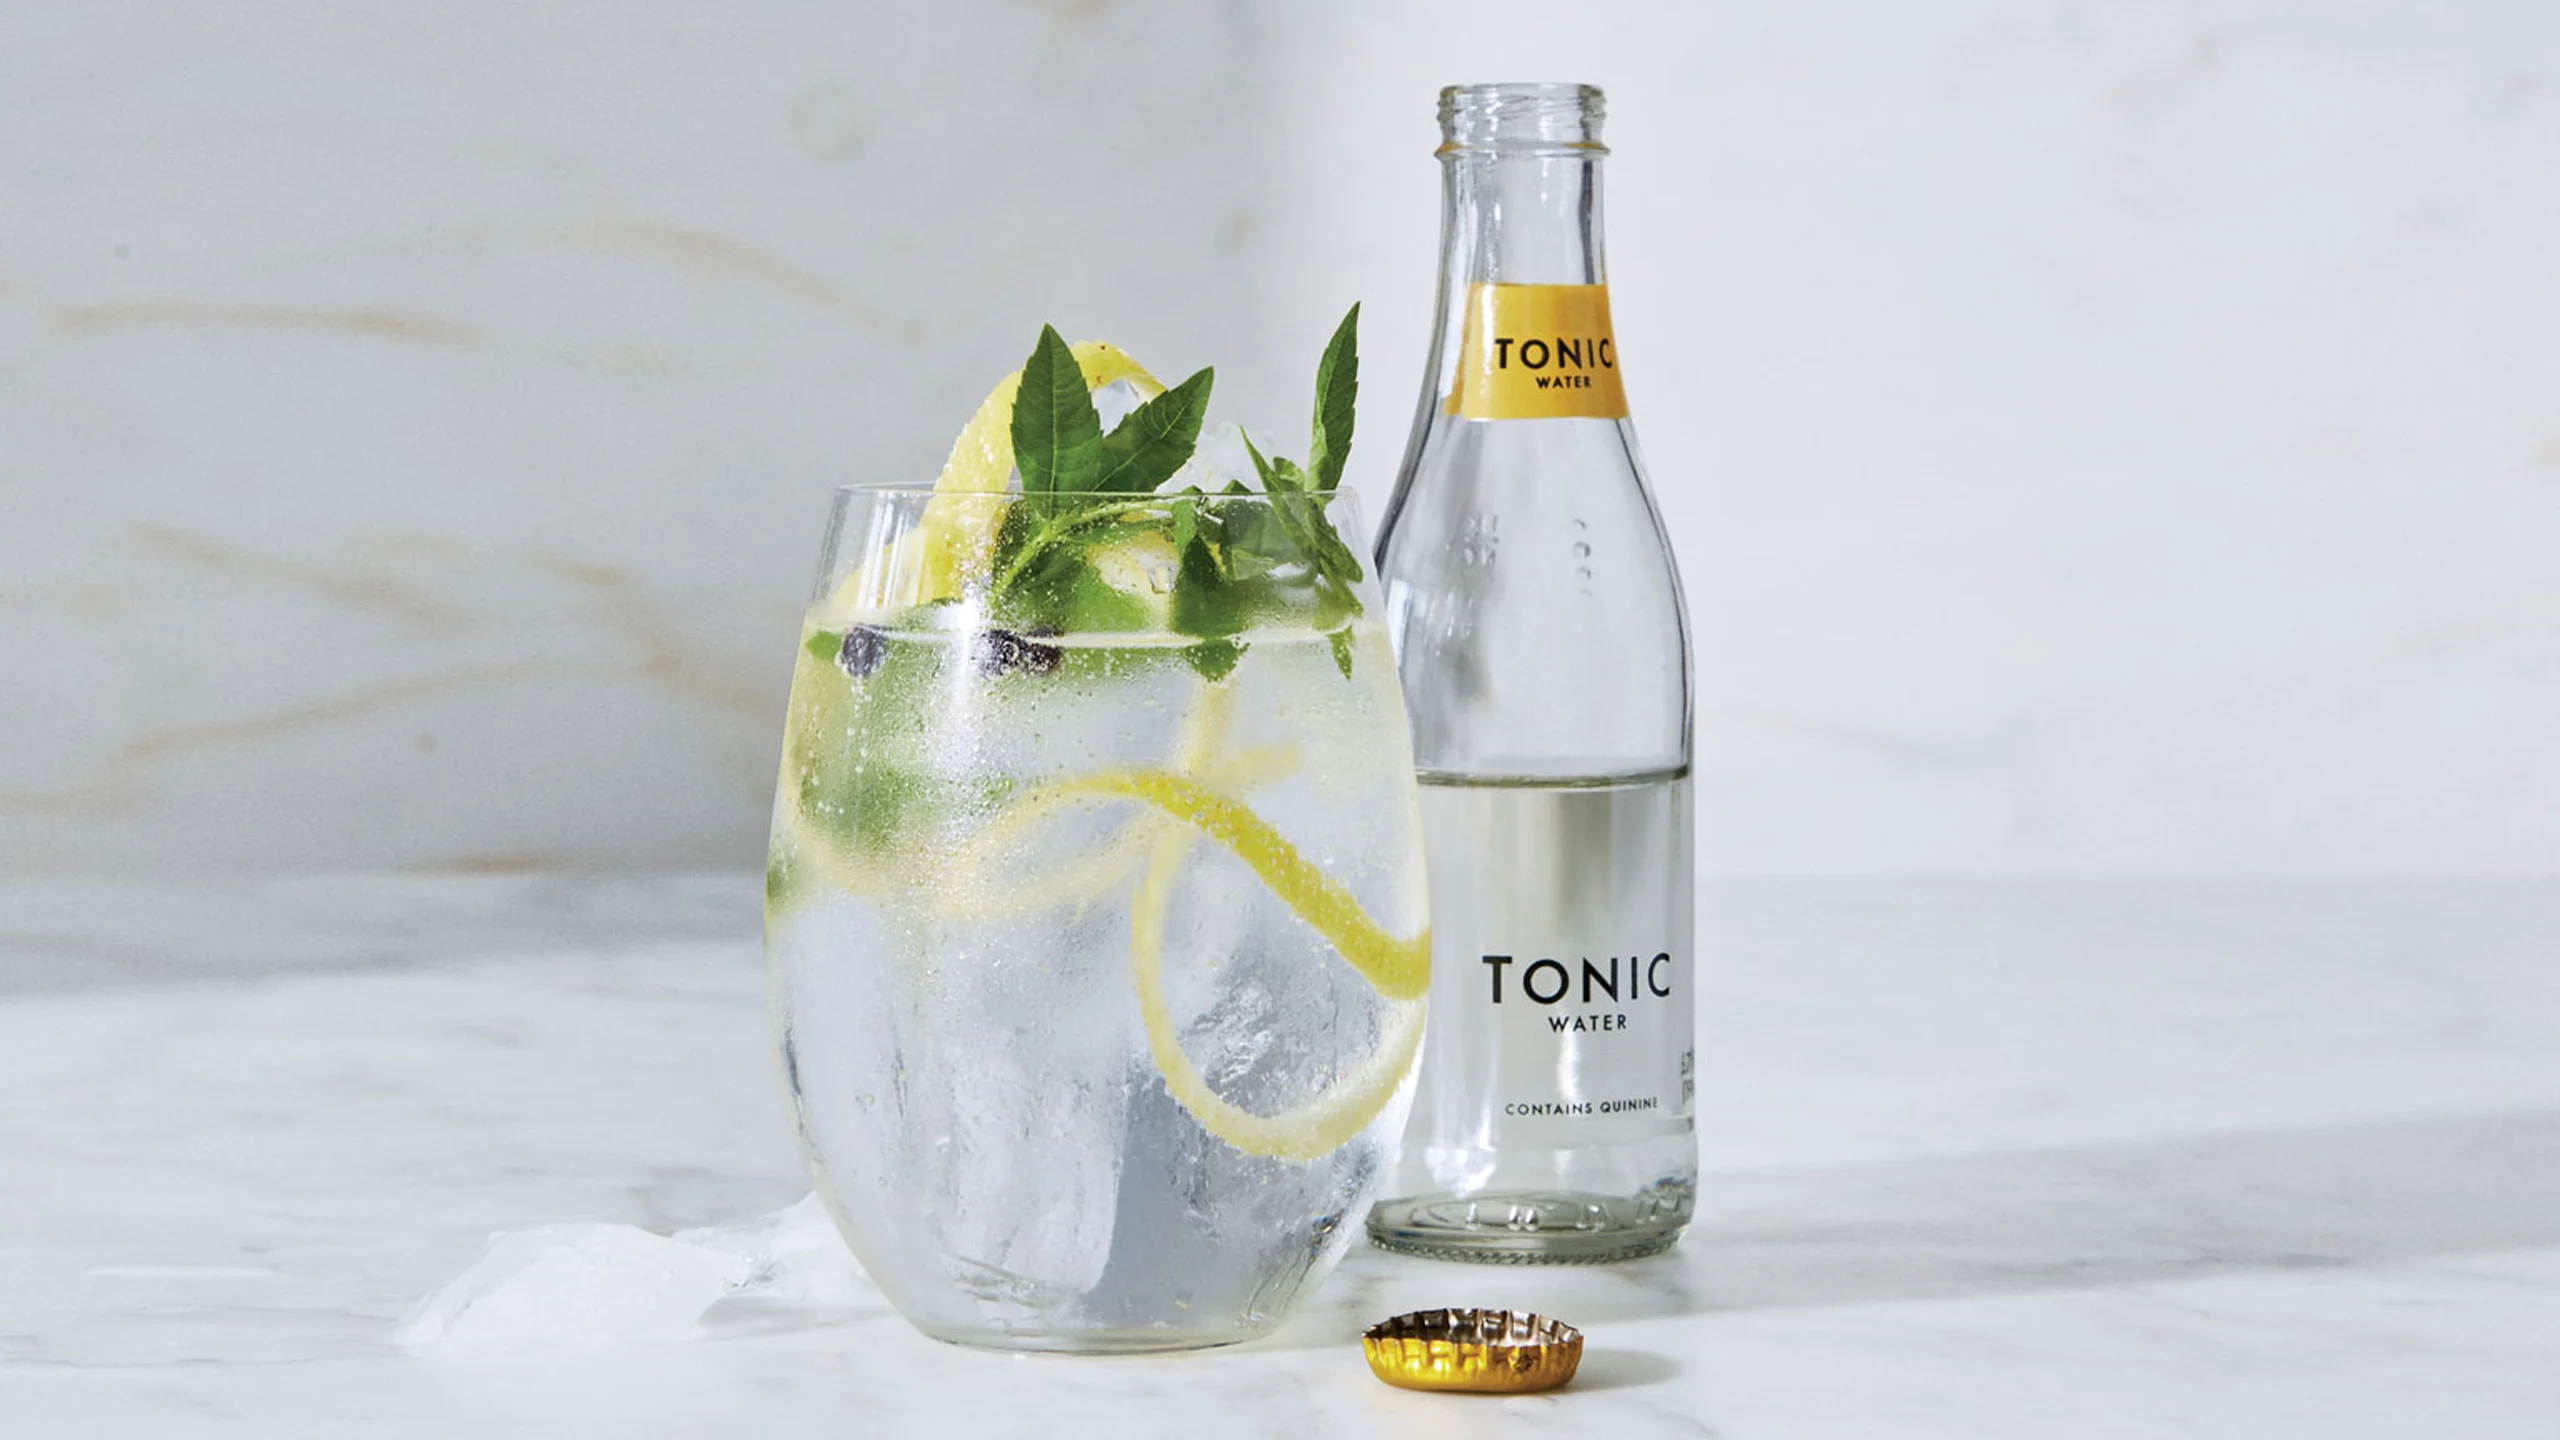 Cómo hacer el gin tonic perfecto, según José Andrés